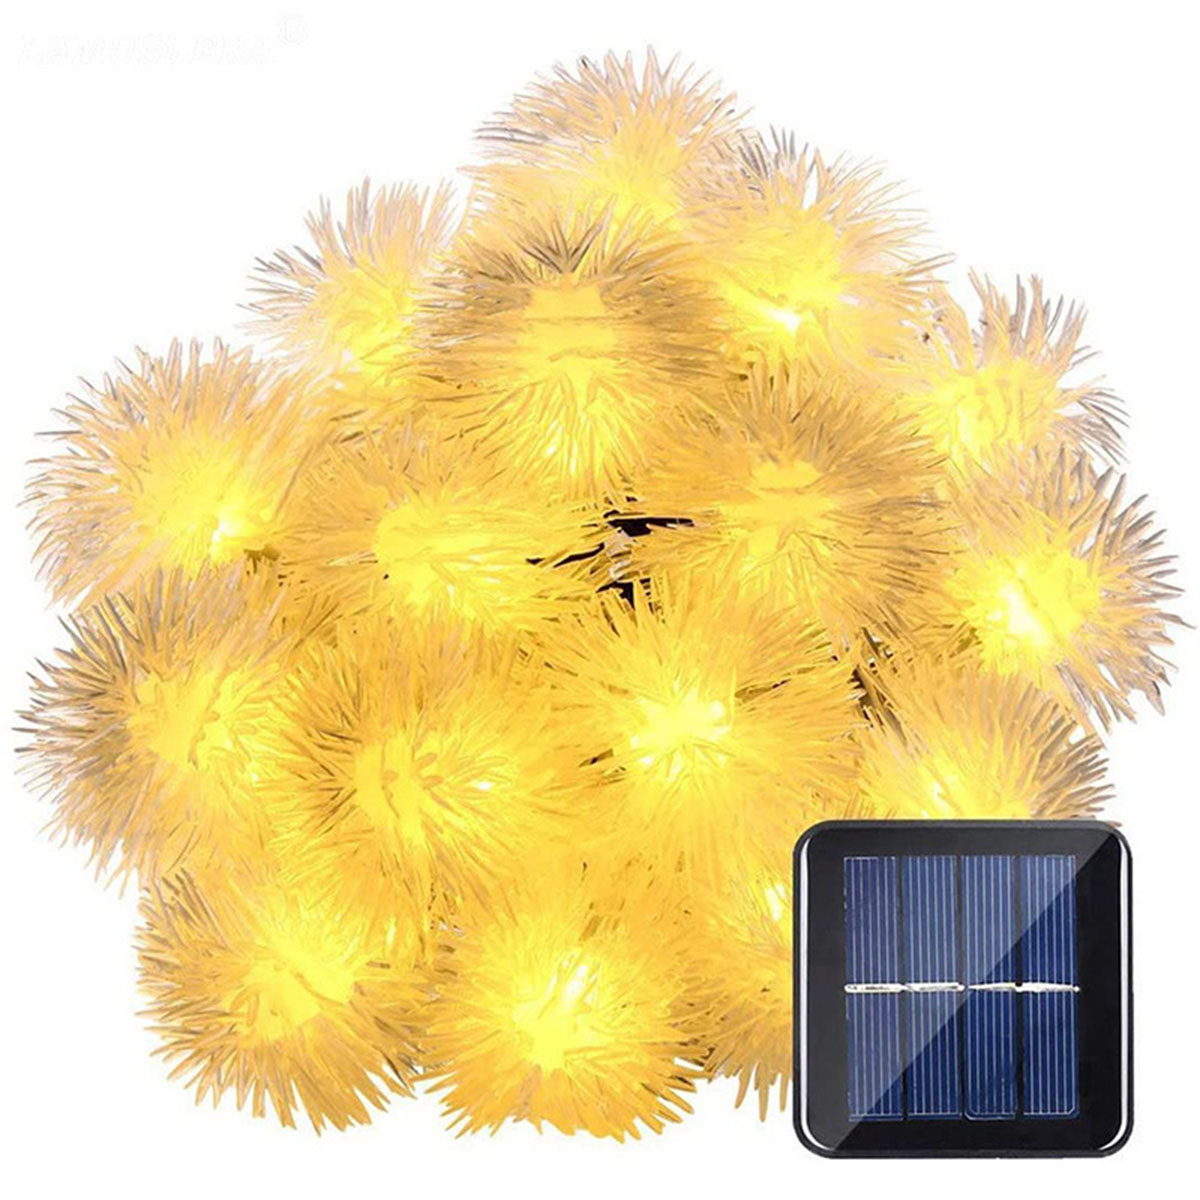 LAMON Solarleuchte, Haarballenlampe 7 Meter Funktionen warmweiß, Warmweiß 50 Solar-Lichterketten, Leuchten Haarballen-Lampe, 8